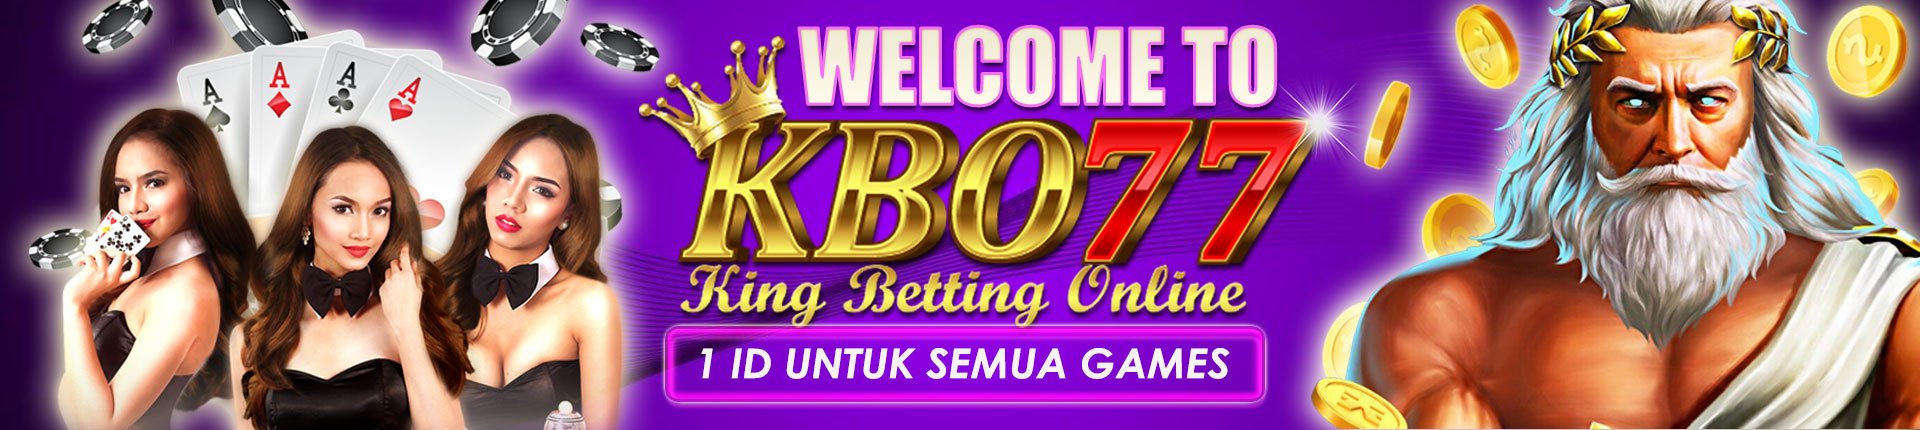 Selamat datang di KBO77, Situs Judi Slot Gacor Online Mudah Jackpot Terpercaya Hari Ini